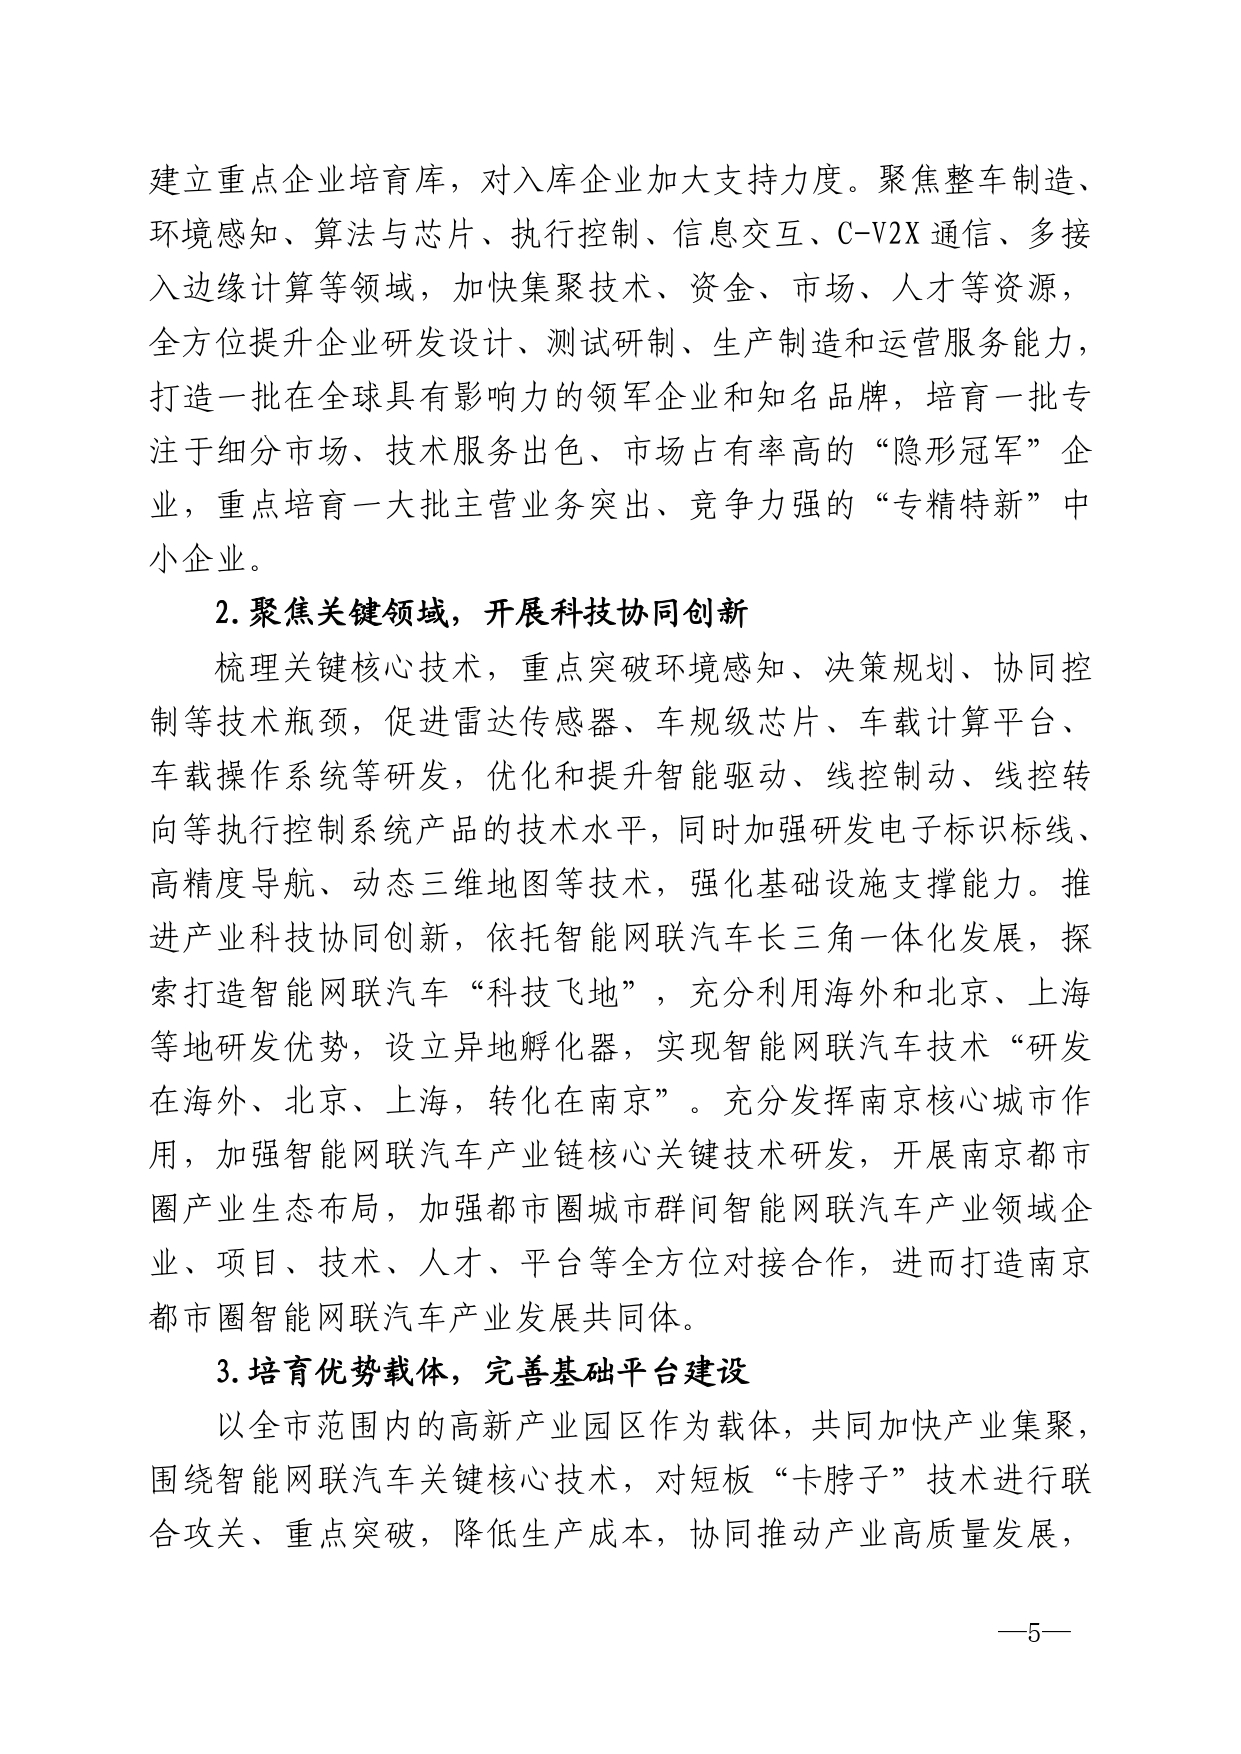 2021年第4期（关于南京智能网联汽车产业高质量发展建议）_page-0005.jpg